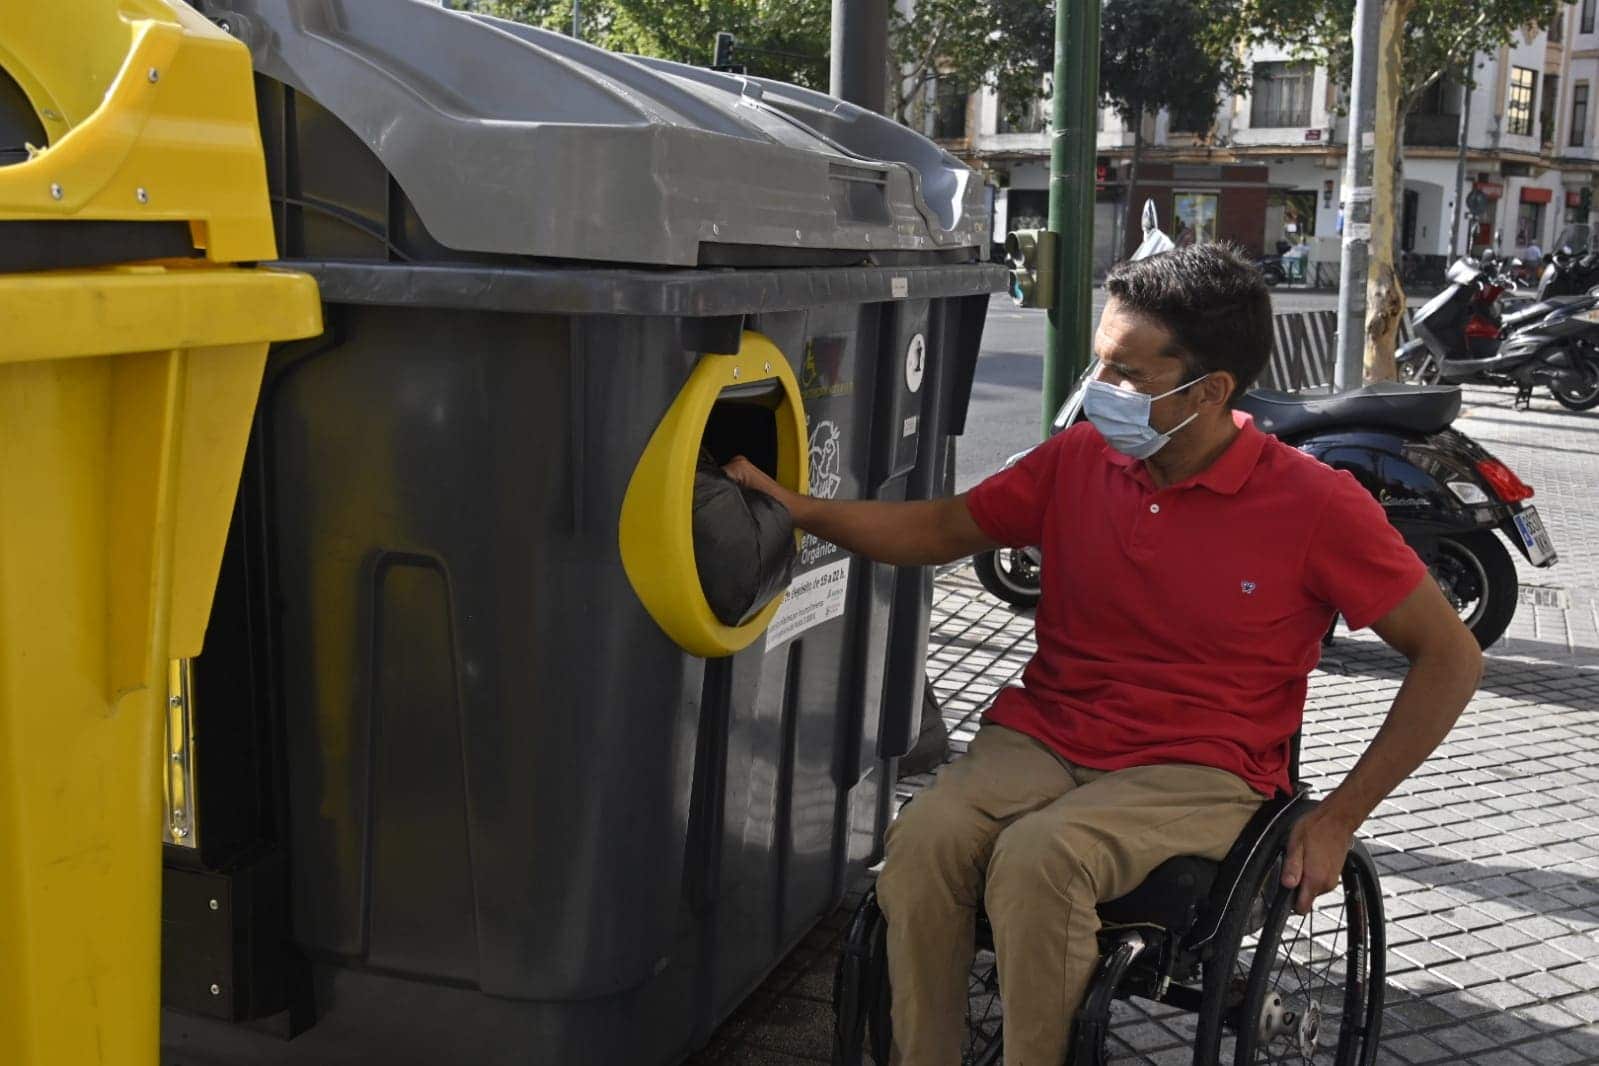 Usuario silla de ruedas arrojando bolsa de basura en contenedor accesible